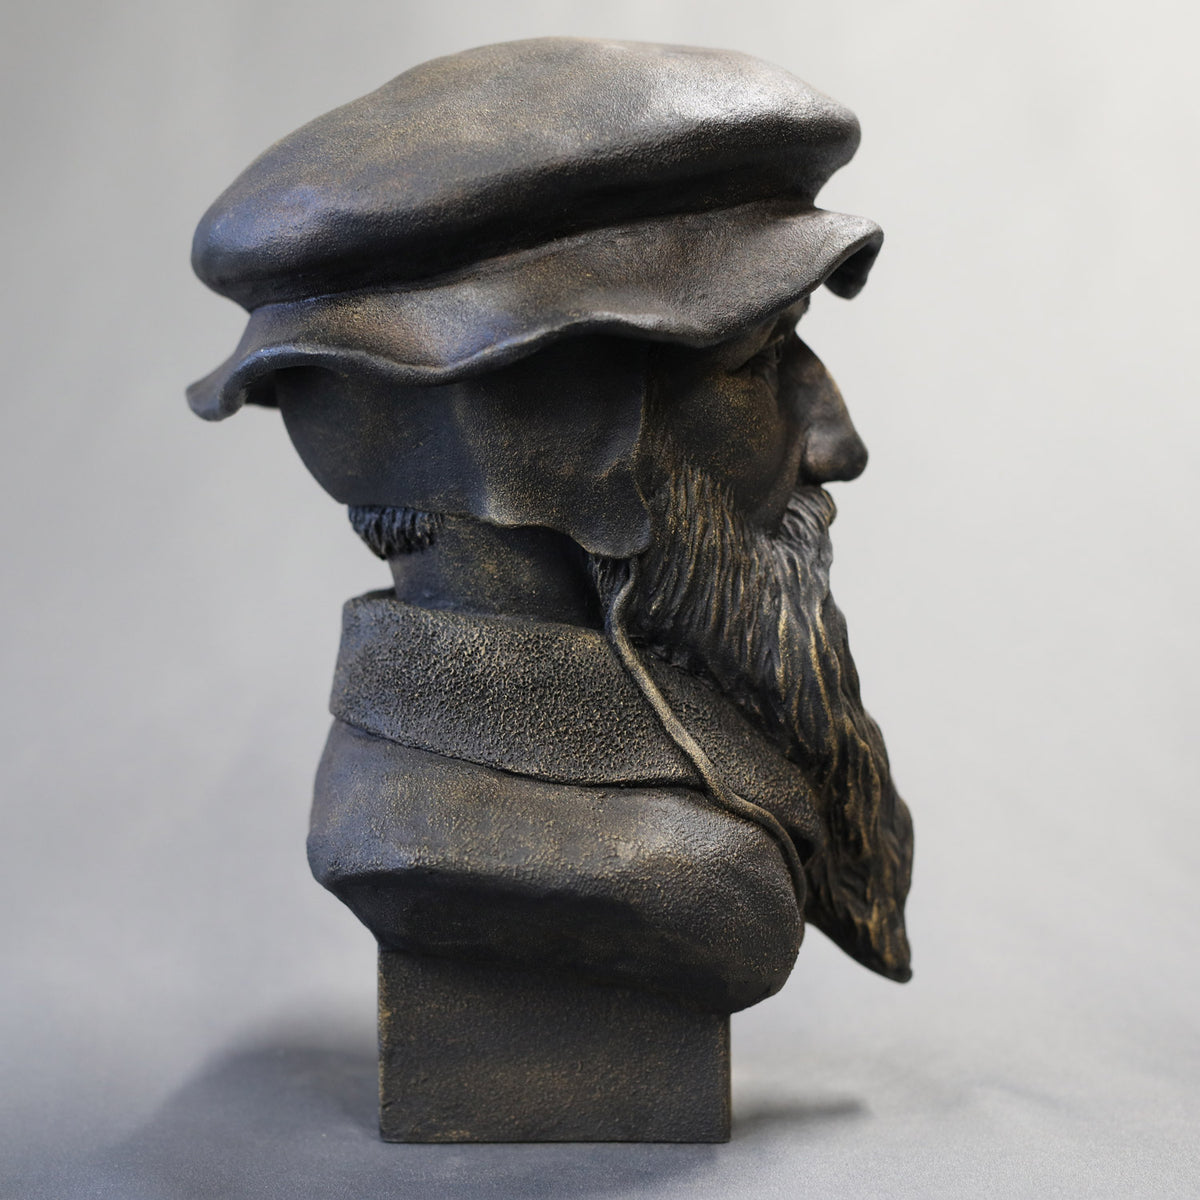 John Calvin - Sculpture